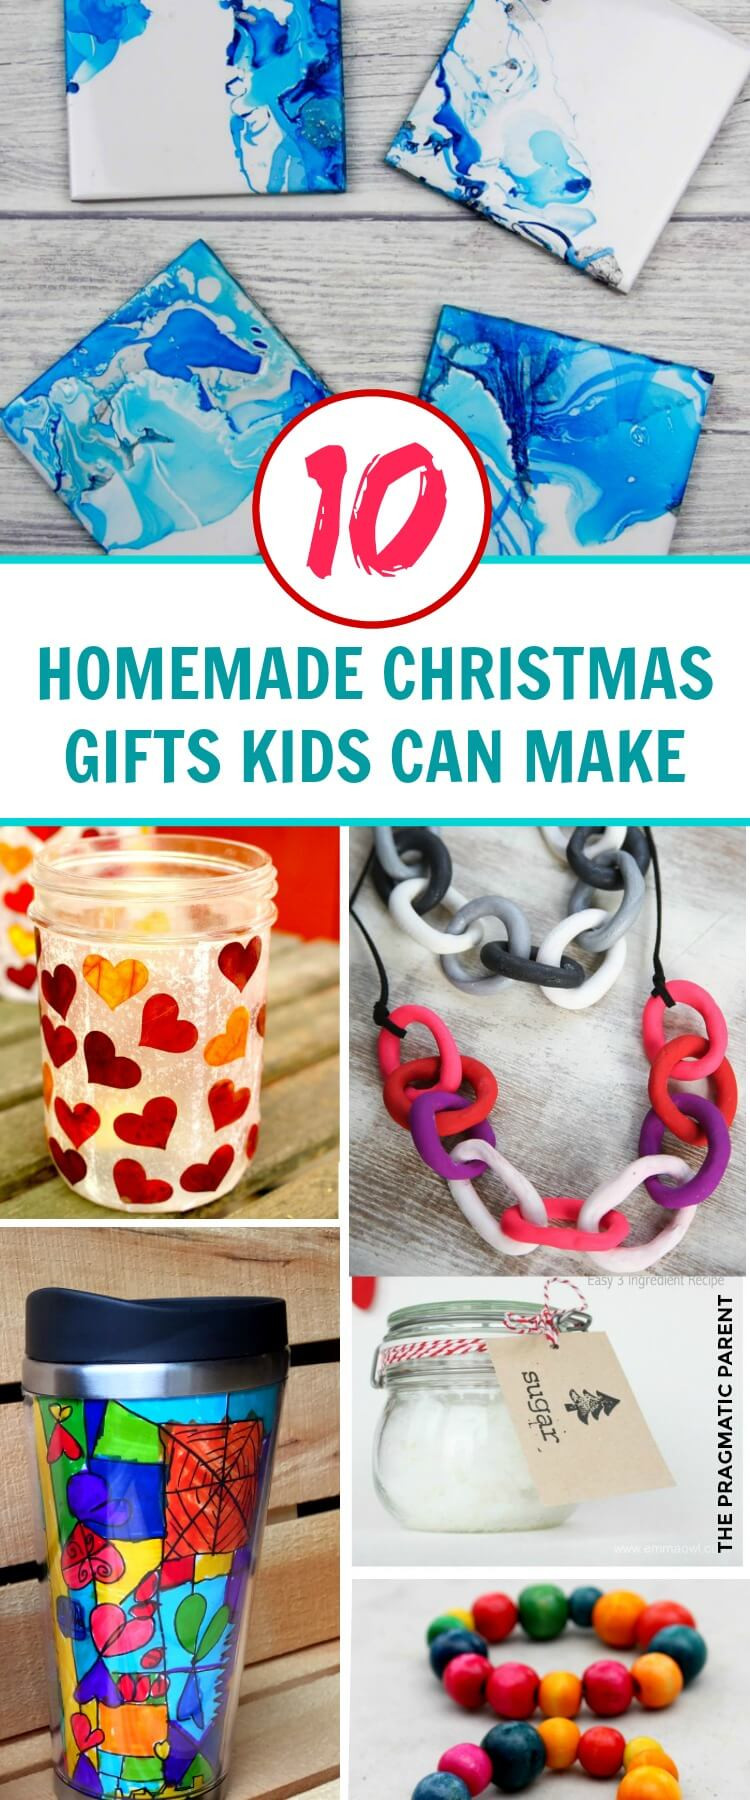 Homemade Christmas Gifts For Children
 10 Beautiful Homemade Christmas Gifts Kids Can Make